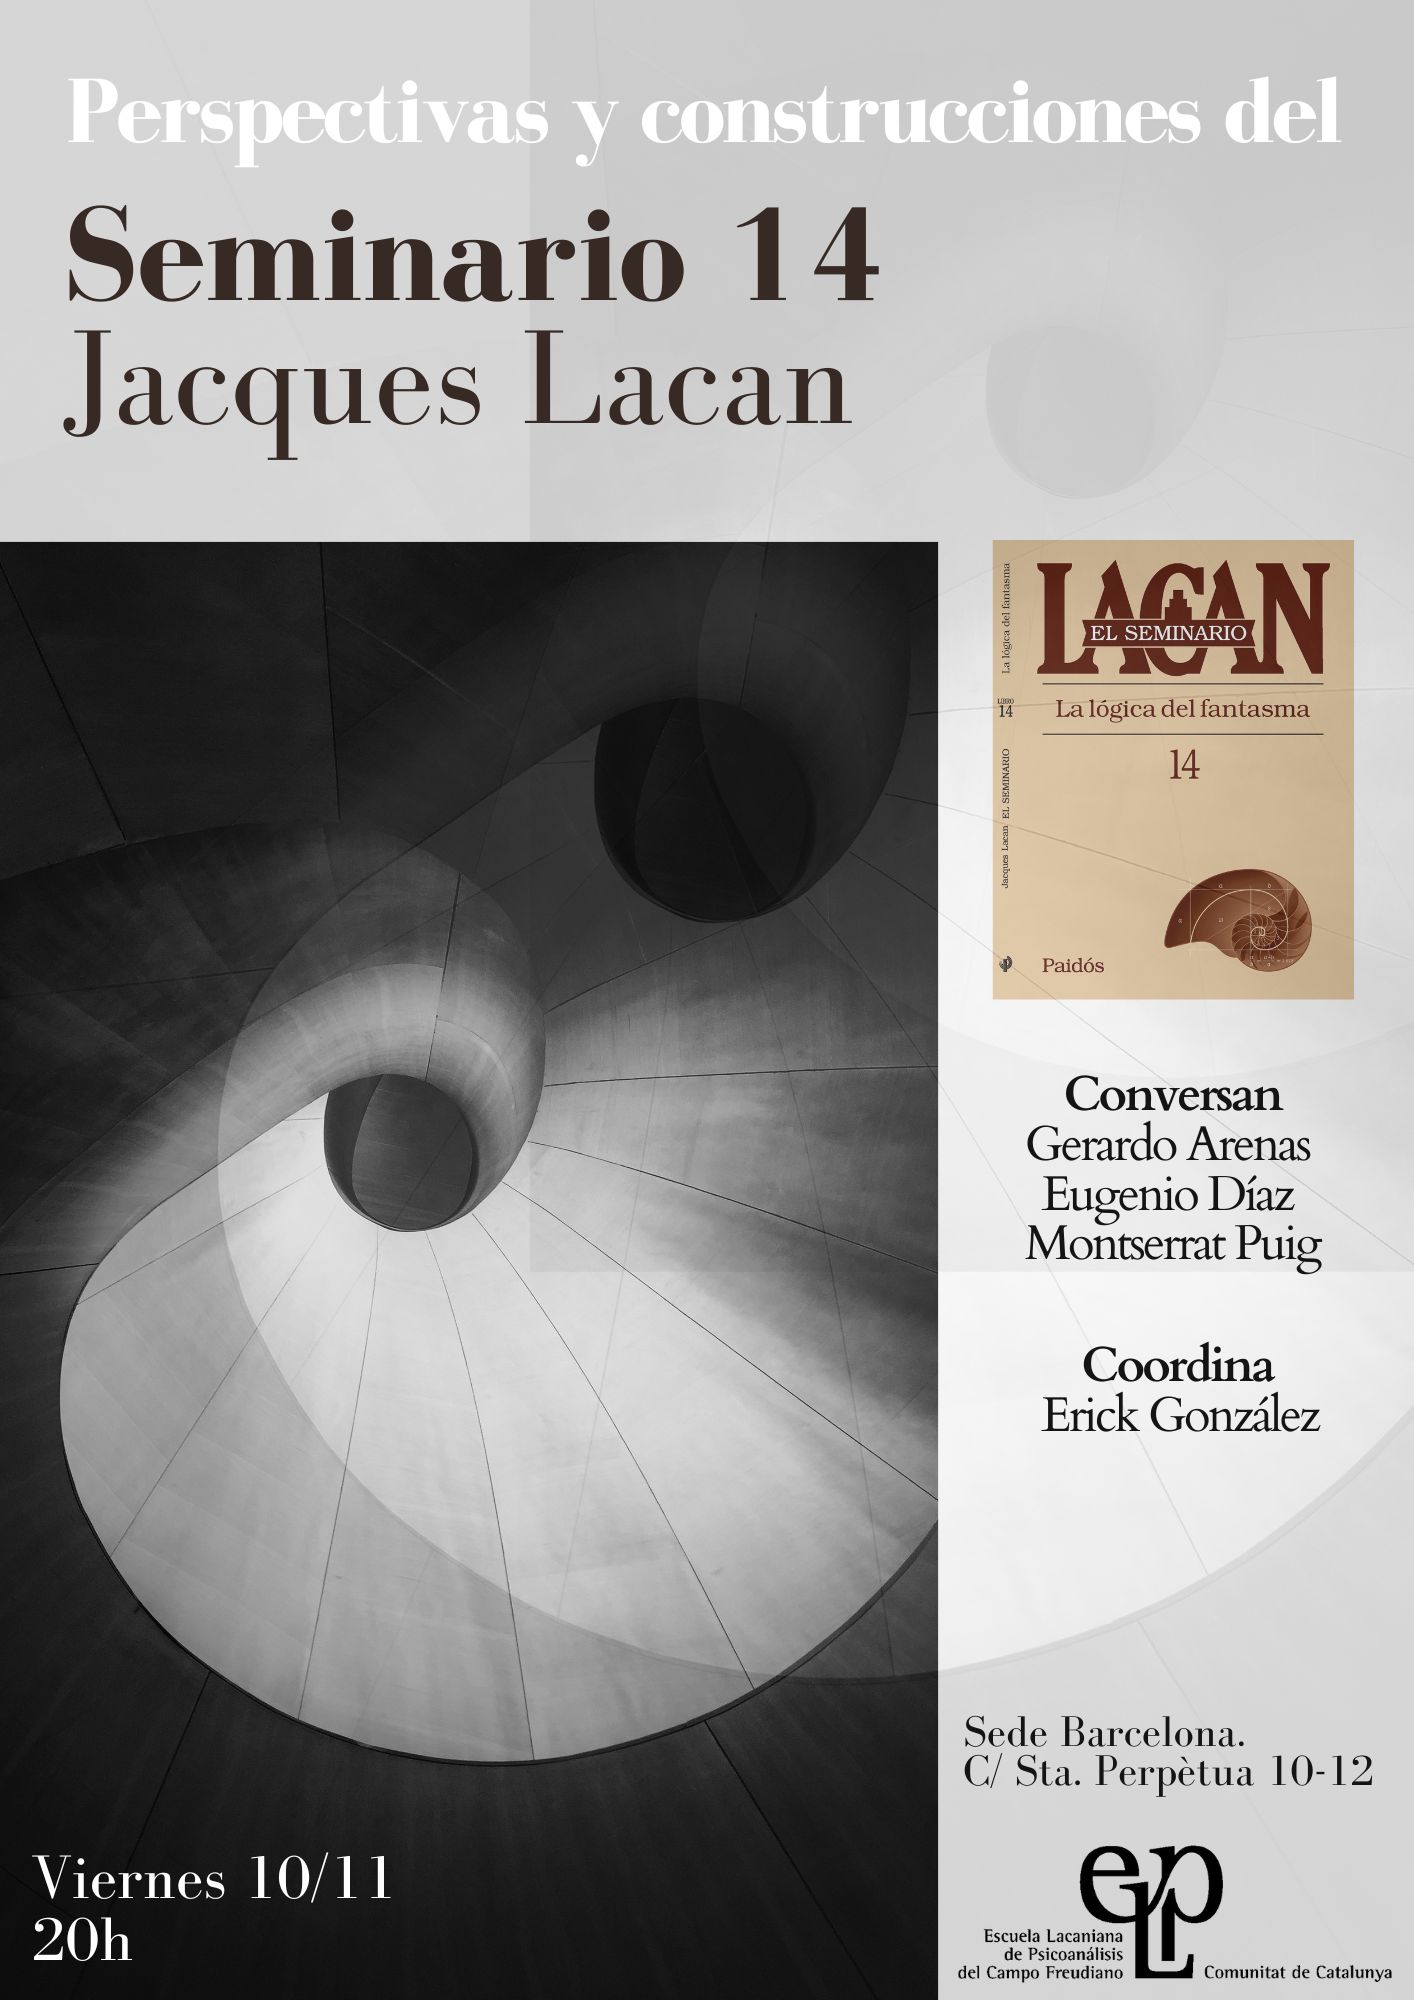 Perspectives i construccions del Seminari 14 de Jacques Lacan